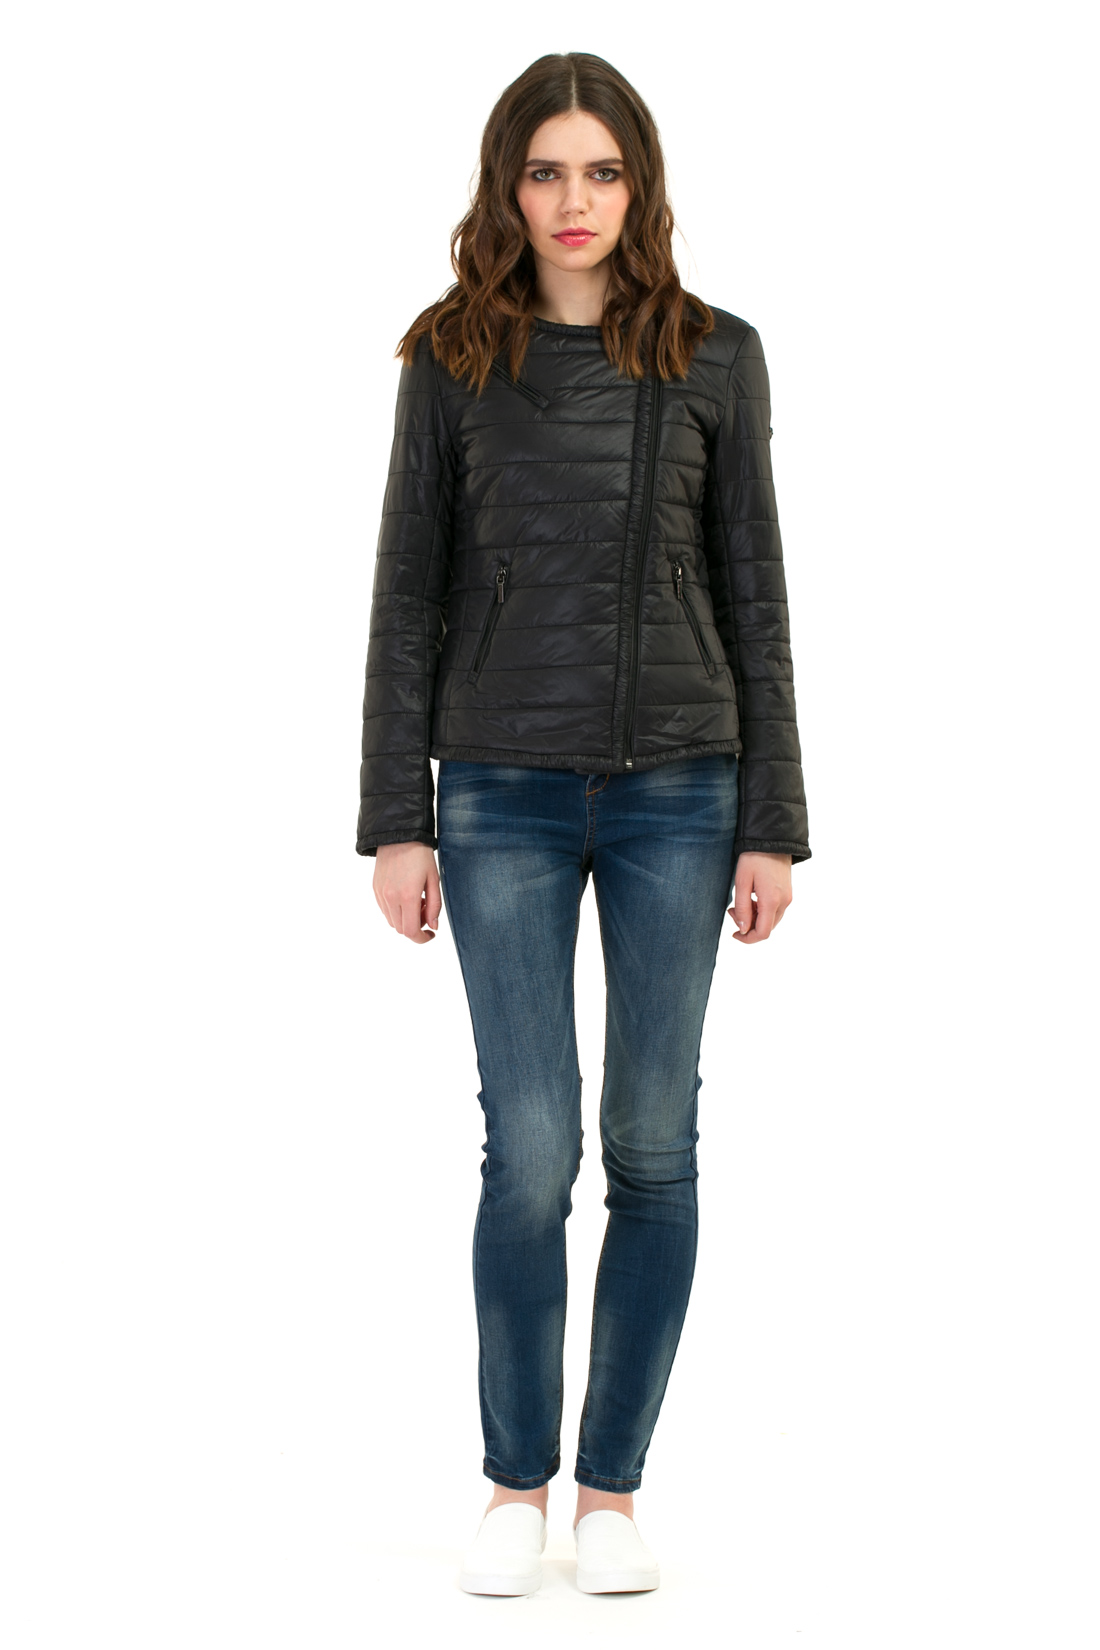 Утеплённая куртка-косуха (арт. baon B037038), размер XXL, цвет черный Утеплённая куртка-косуха (арт. baon B037038) - фото 4